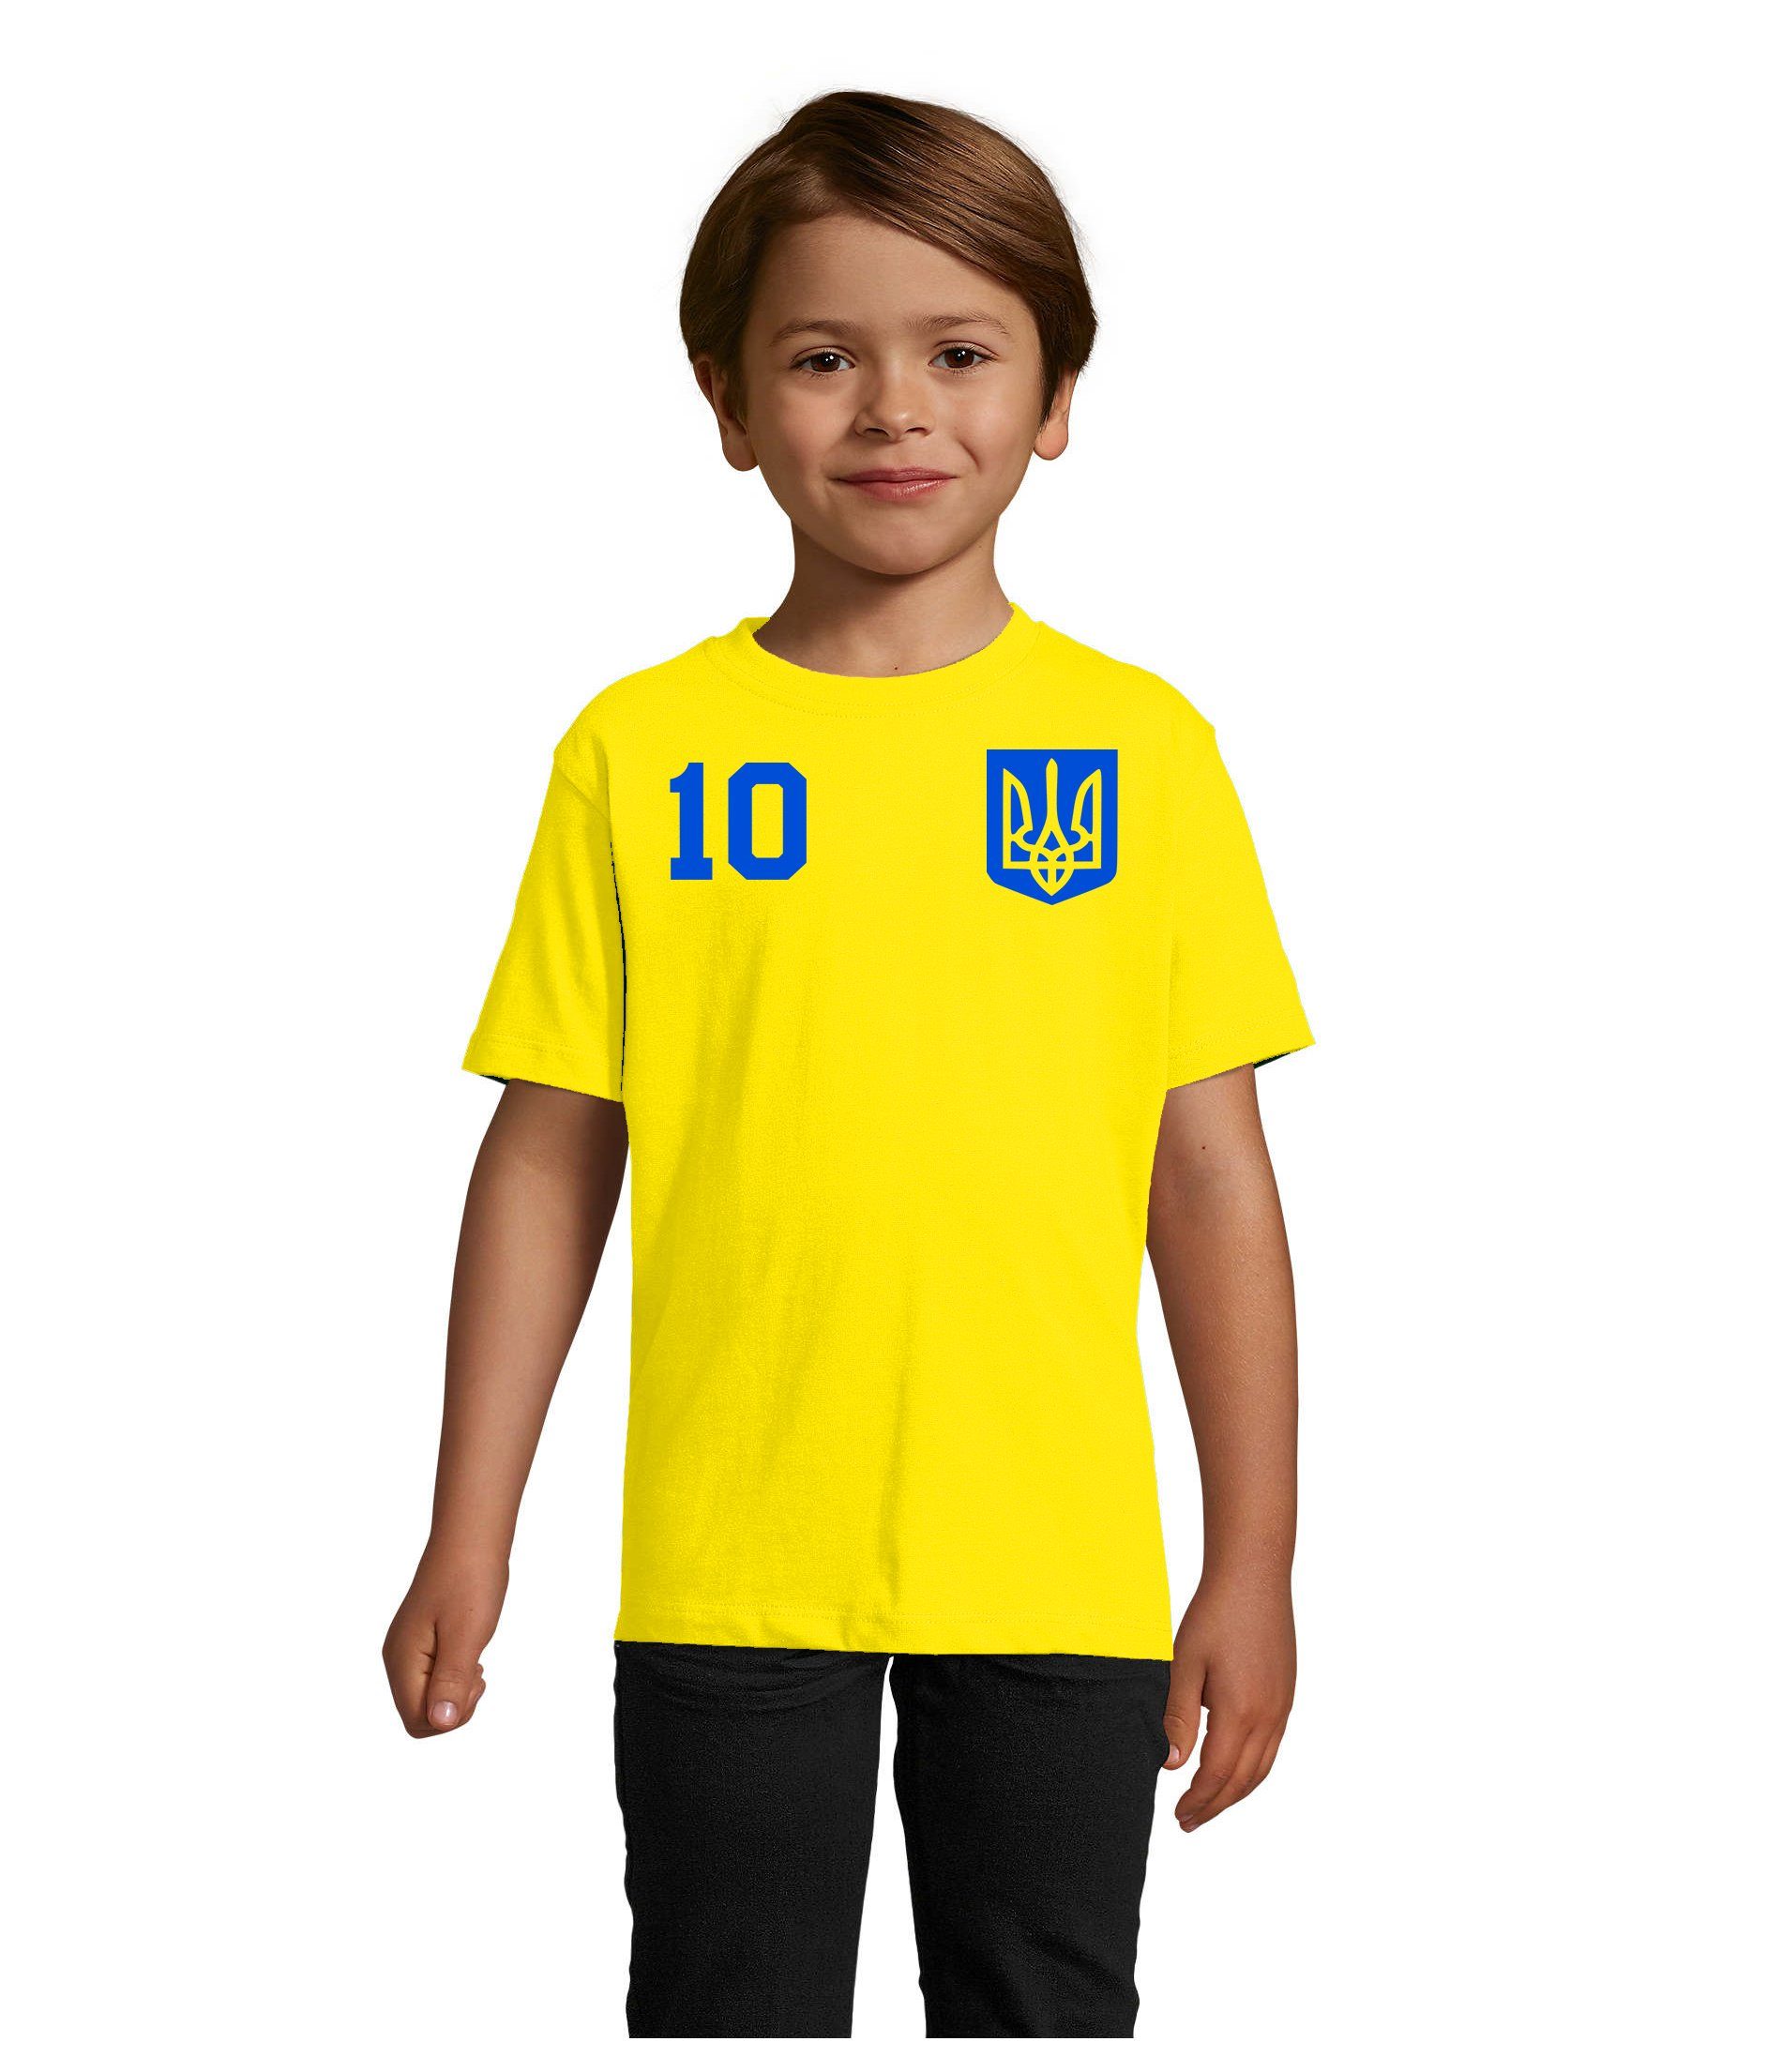 Blondie & Brownie T-Shirt Kinder Ukraine Meister Trikot Sport Fußball Ukraina WM Europa EM